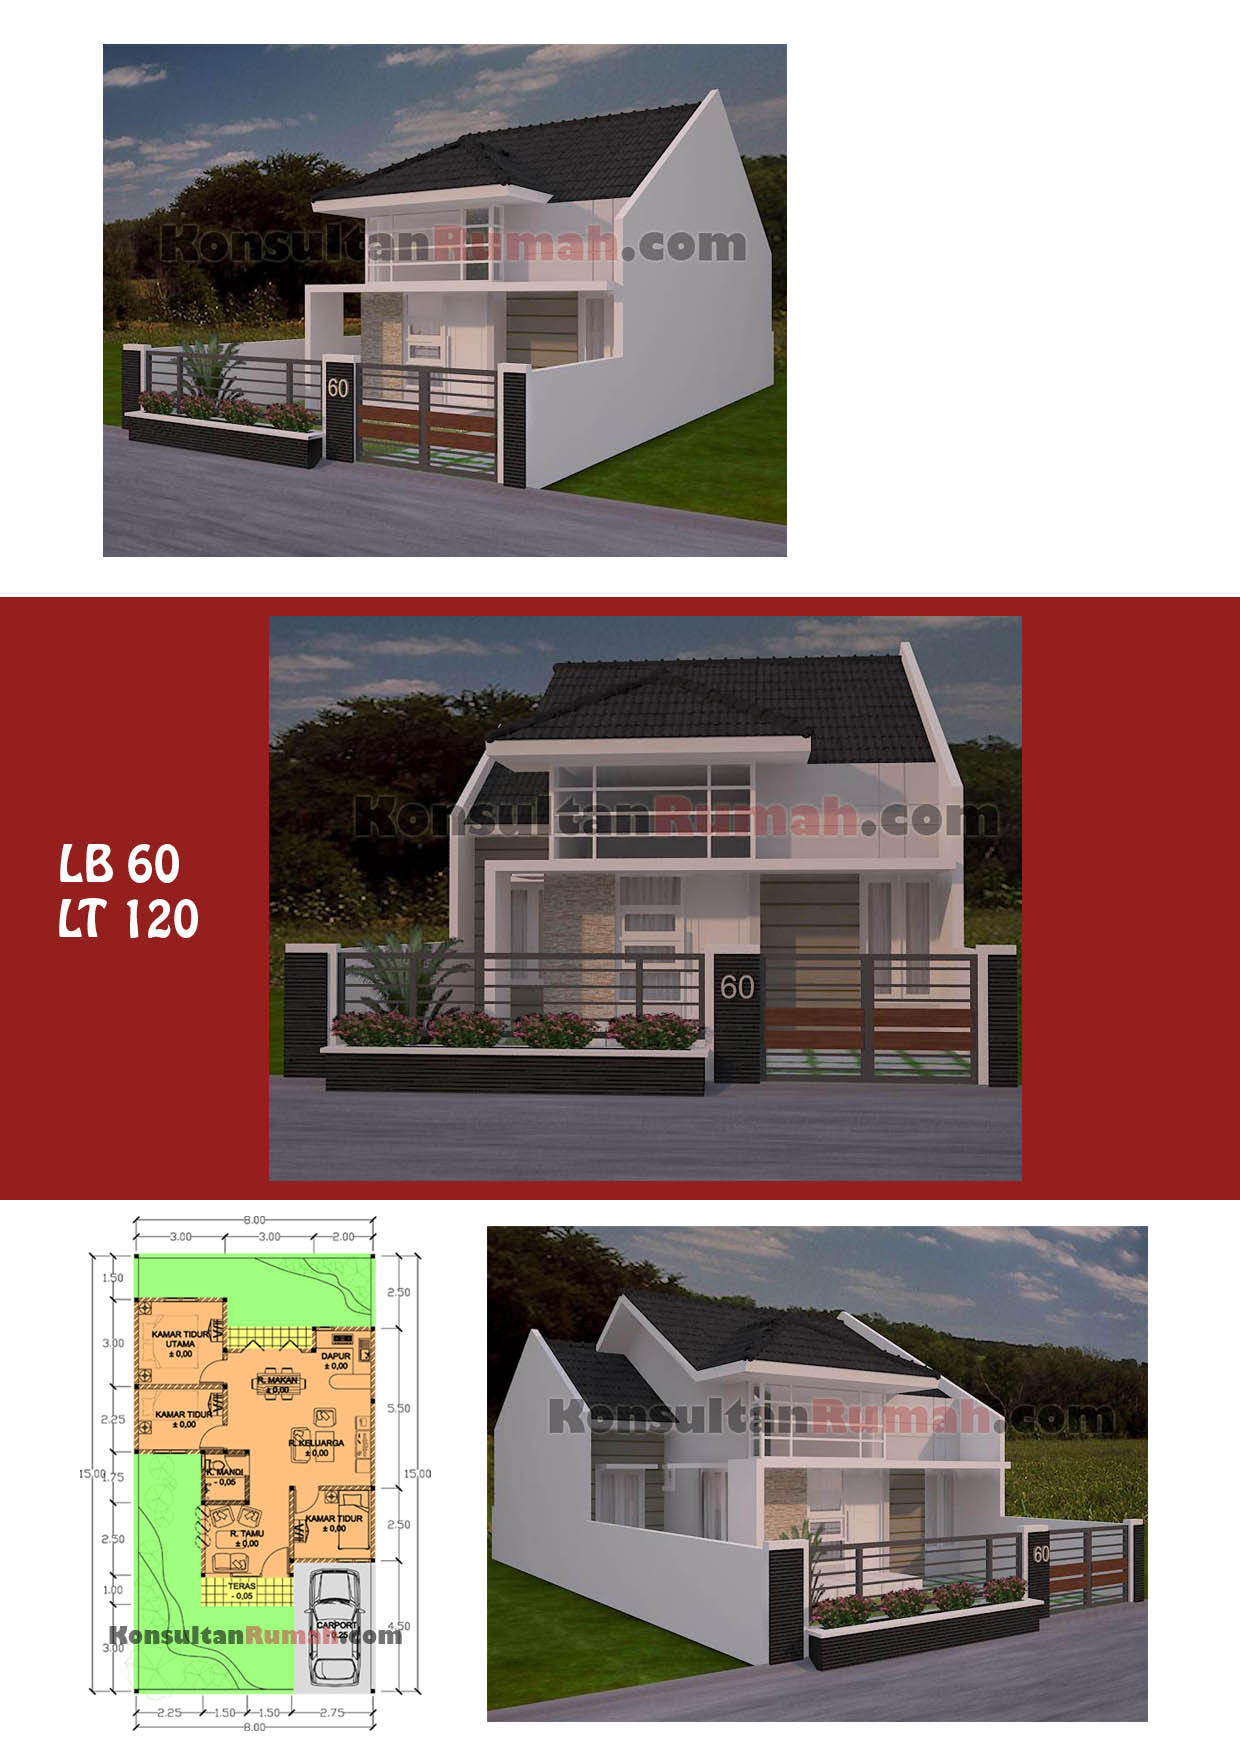 Desain Rumah Minimalis Luas Tanah 60 Meter Kumpulan Desain Rumah